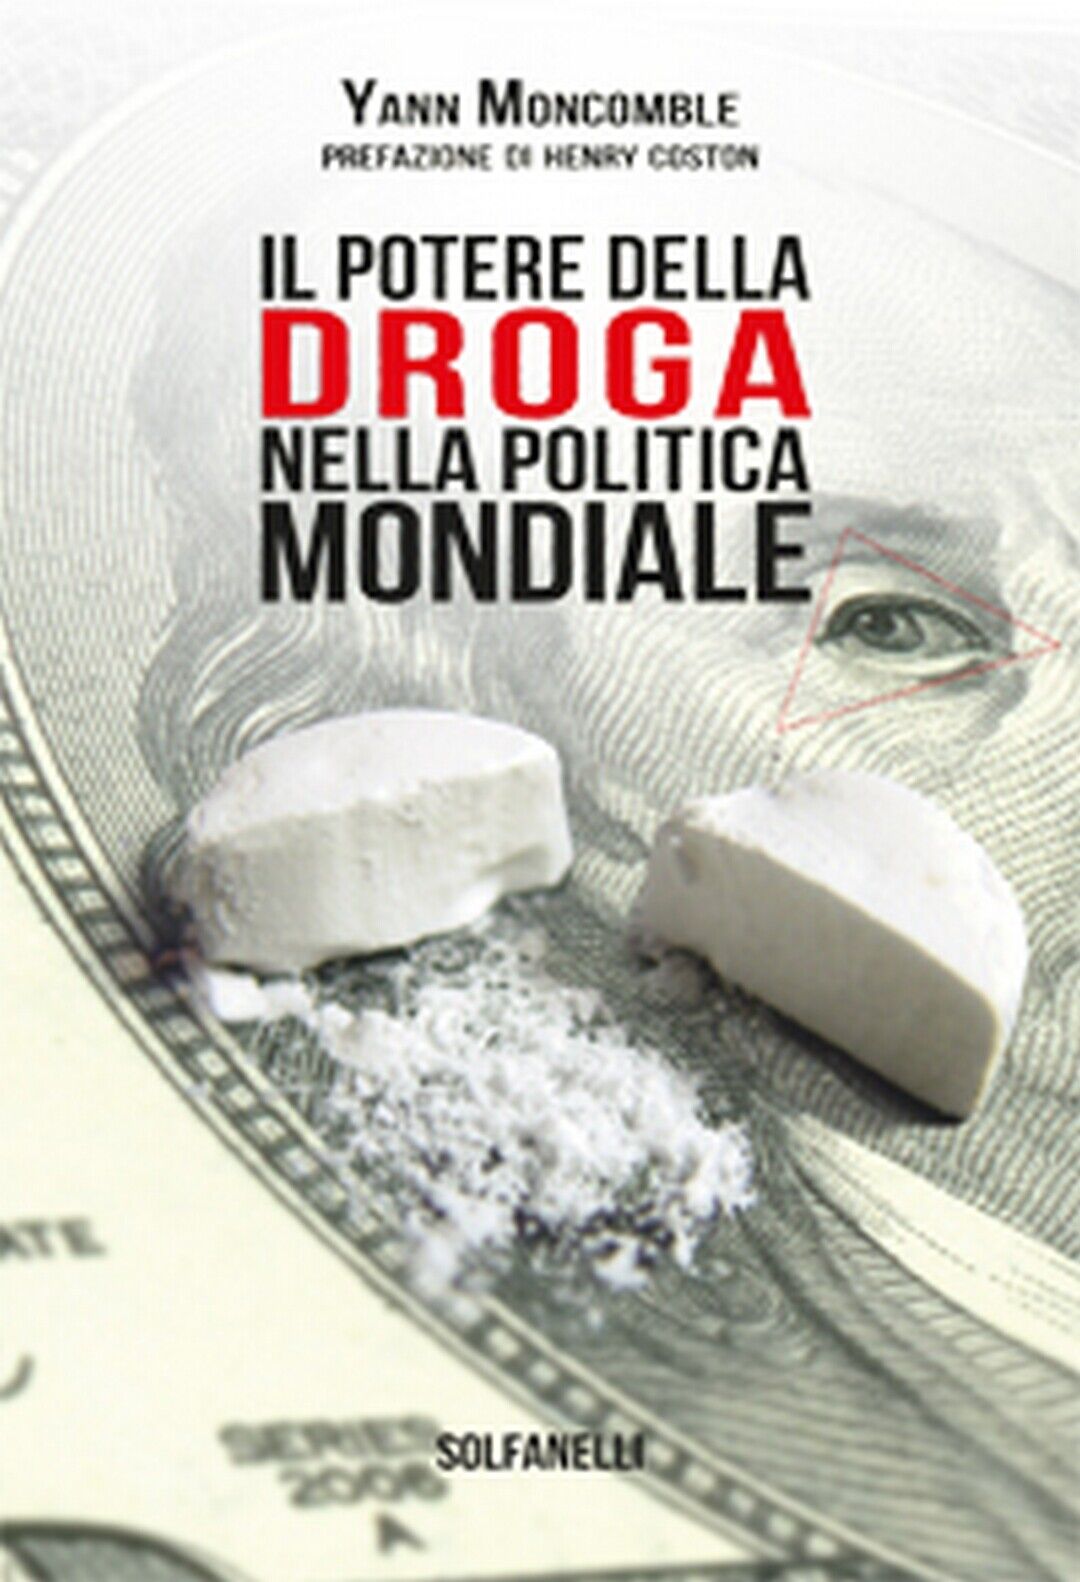 IL POTERE DELLA DROGA NELLA POLITICA MONDIALE  di Yann Moncomble,  Solfanelli